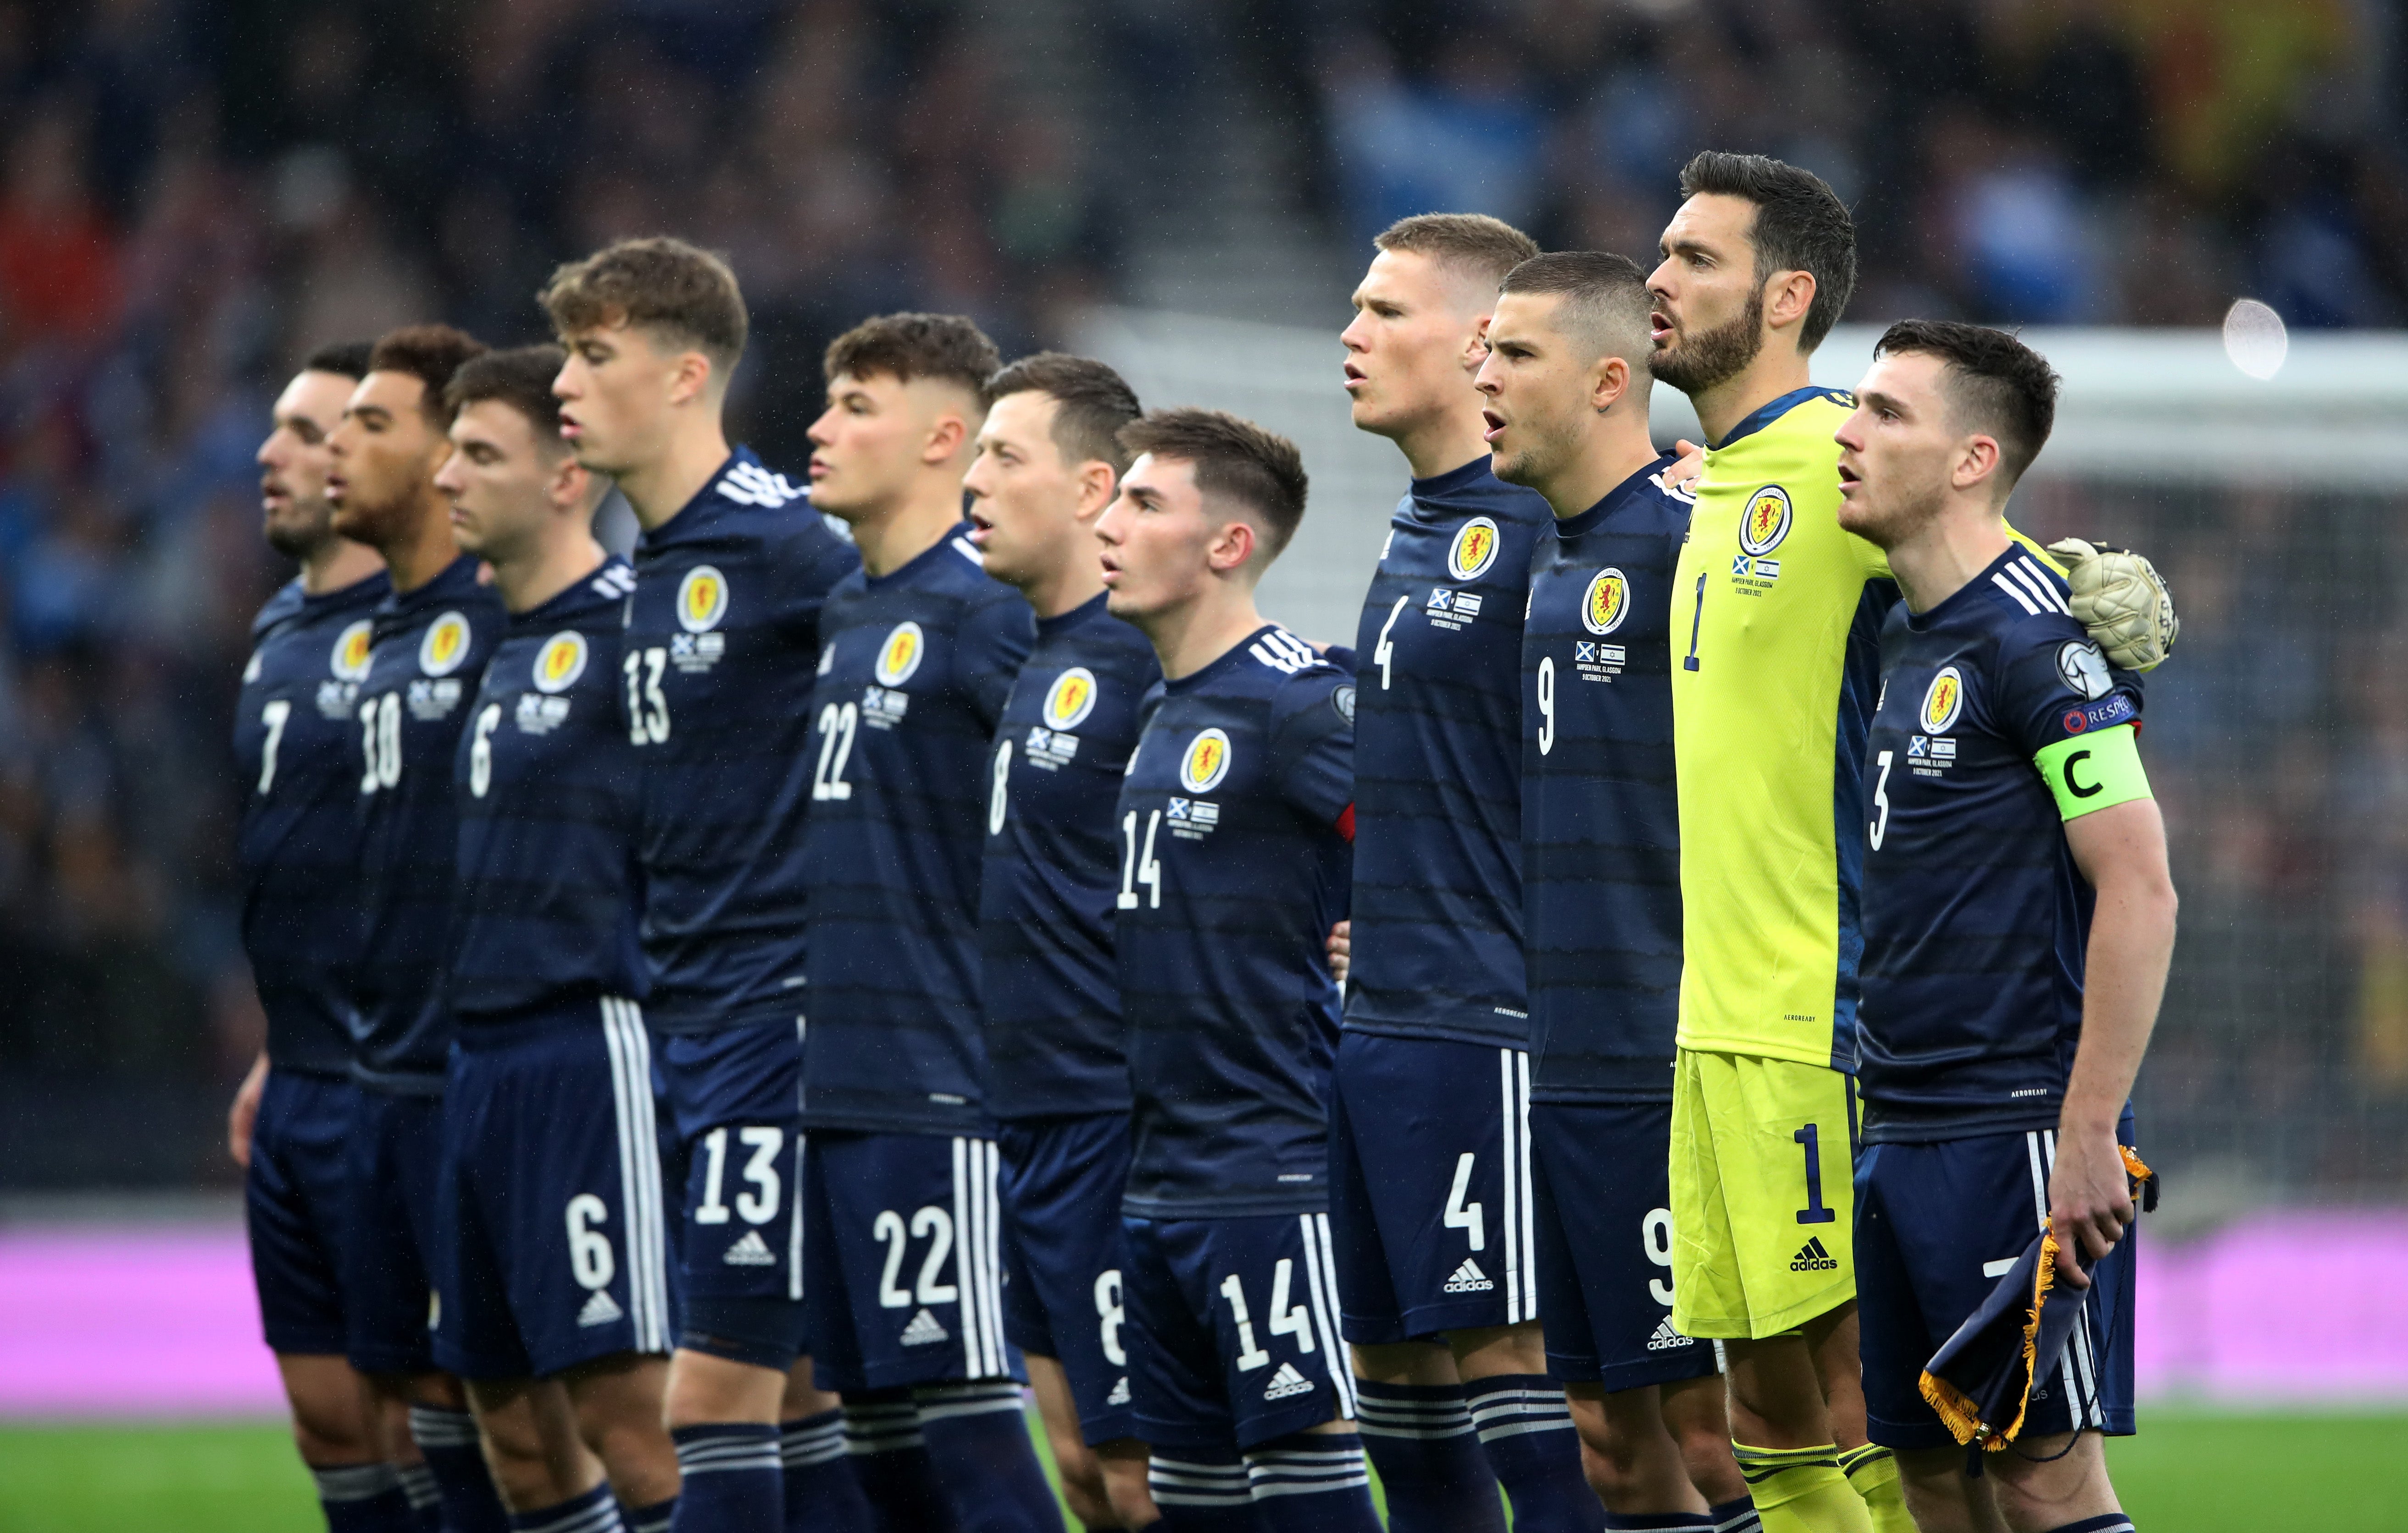 The Scotland national team